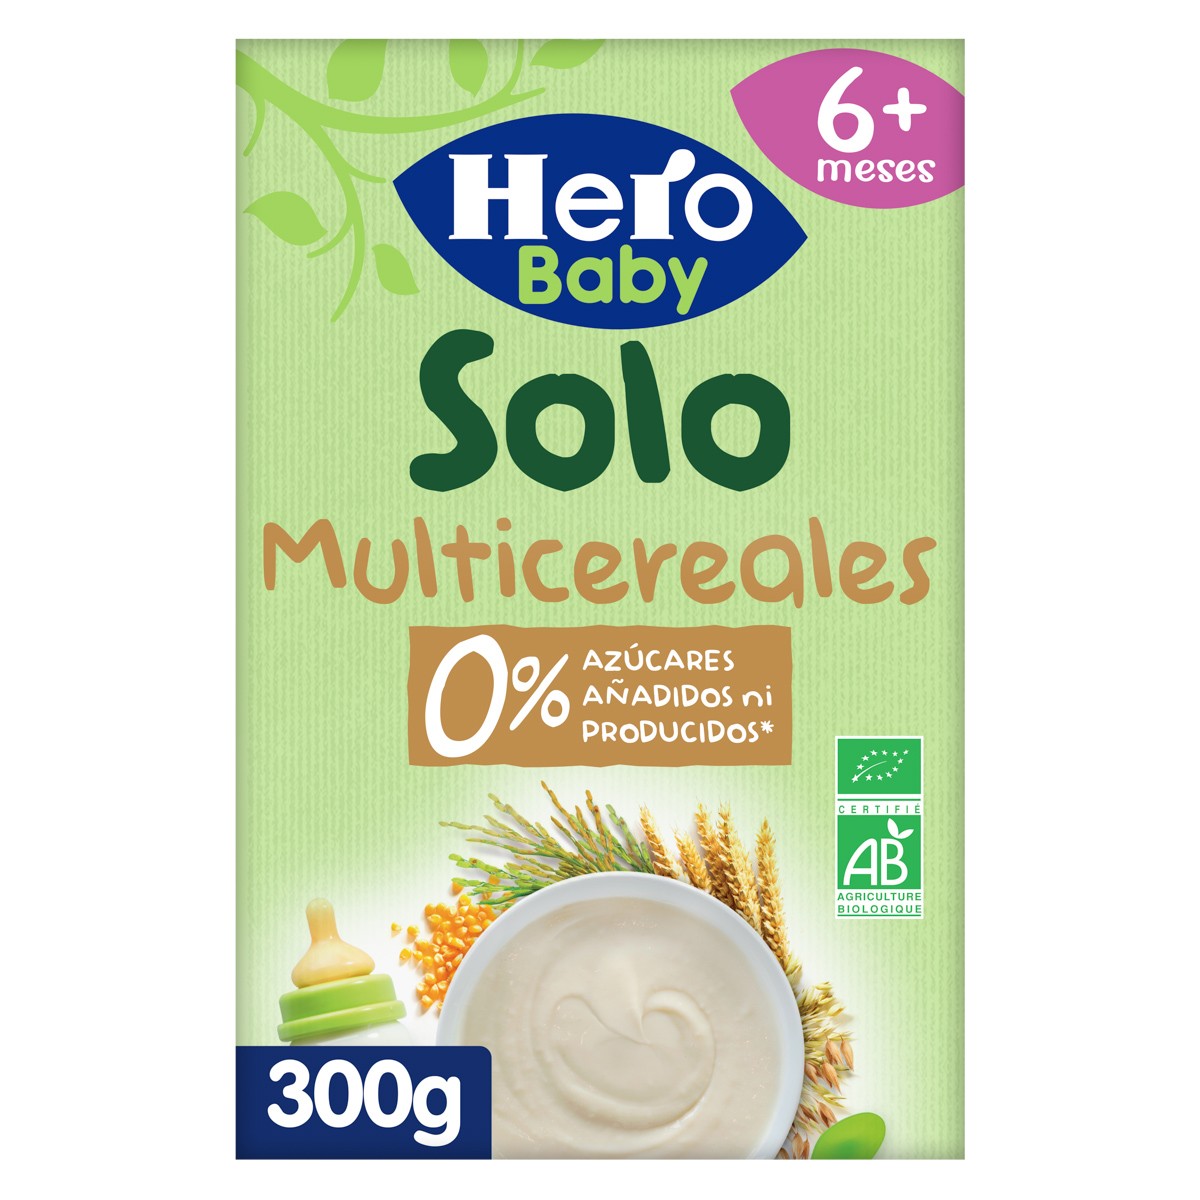 Hero Baby Solo ecológico multicereales 300g